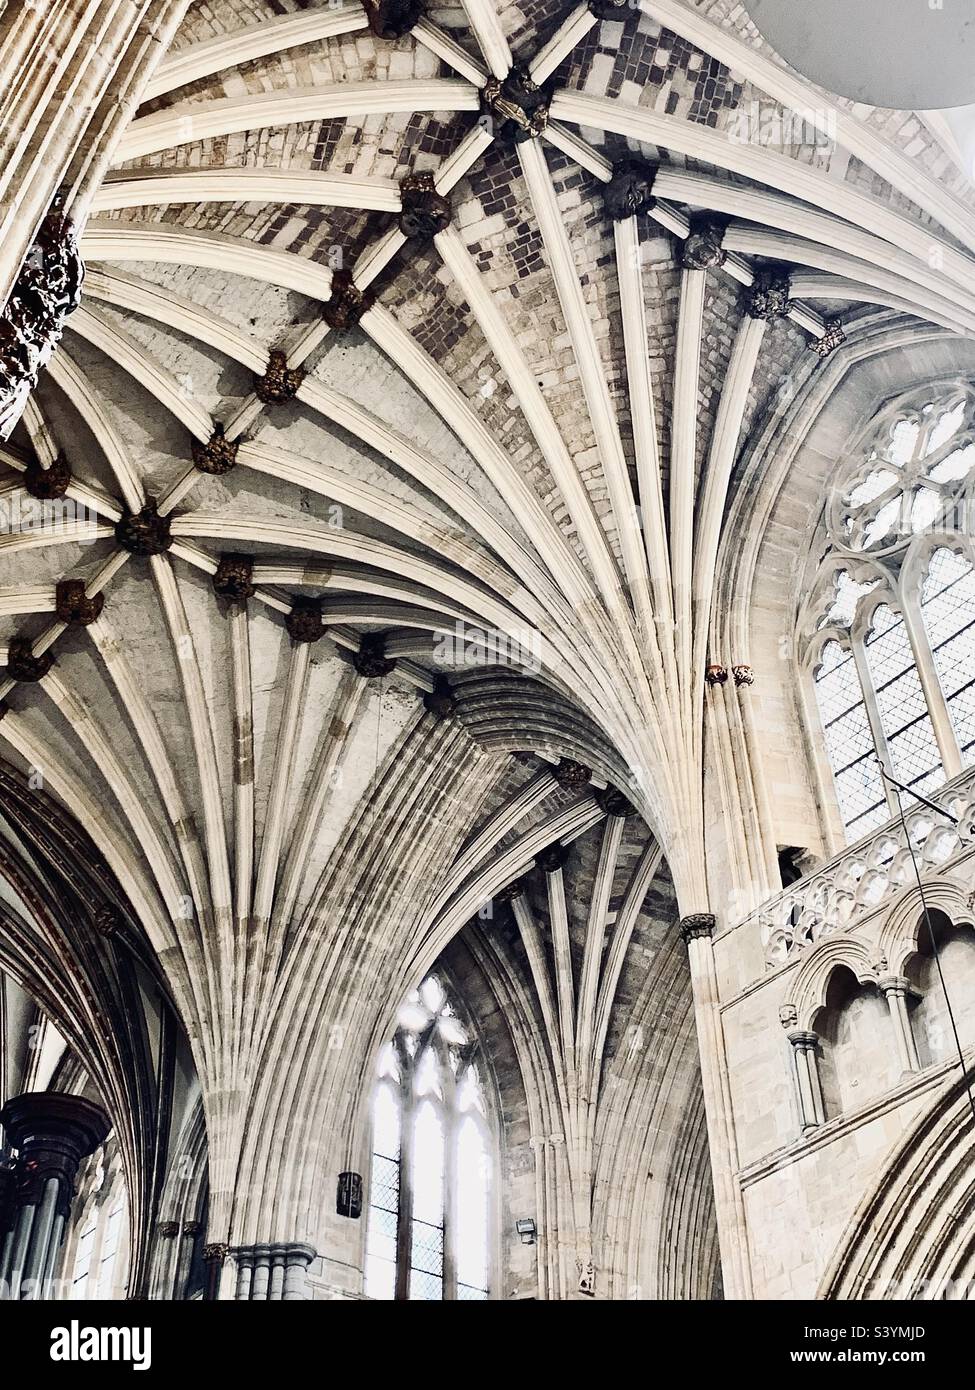 Erstaunliche Details der architektonischen Schönheit des Innendachs und der Decke der geschnitzten Säulen der Kathedrale von Exeter, England Stockfoto